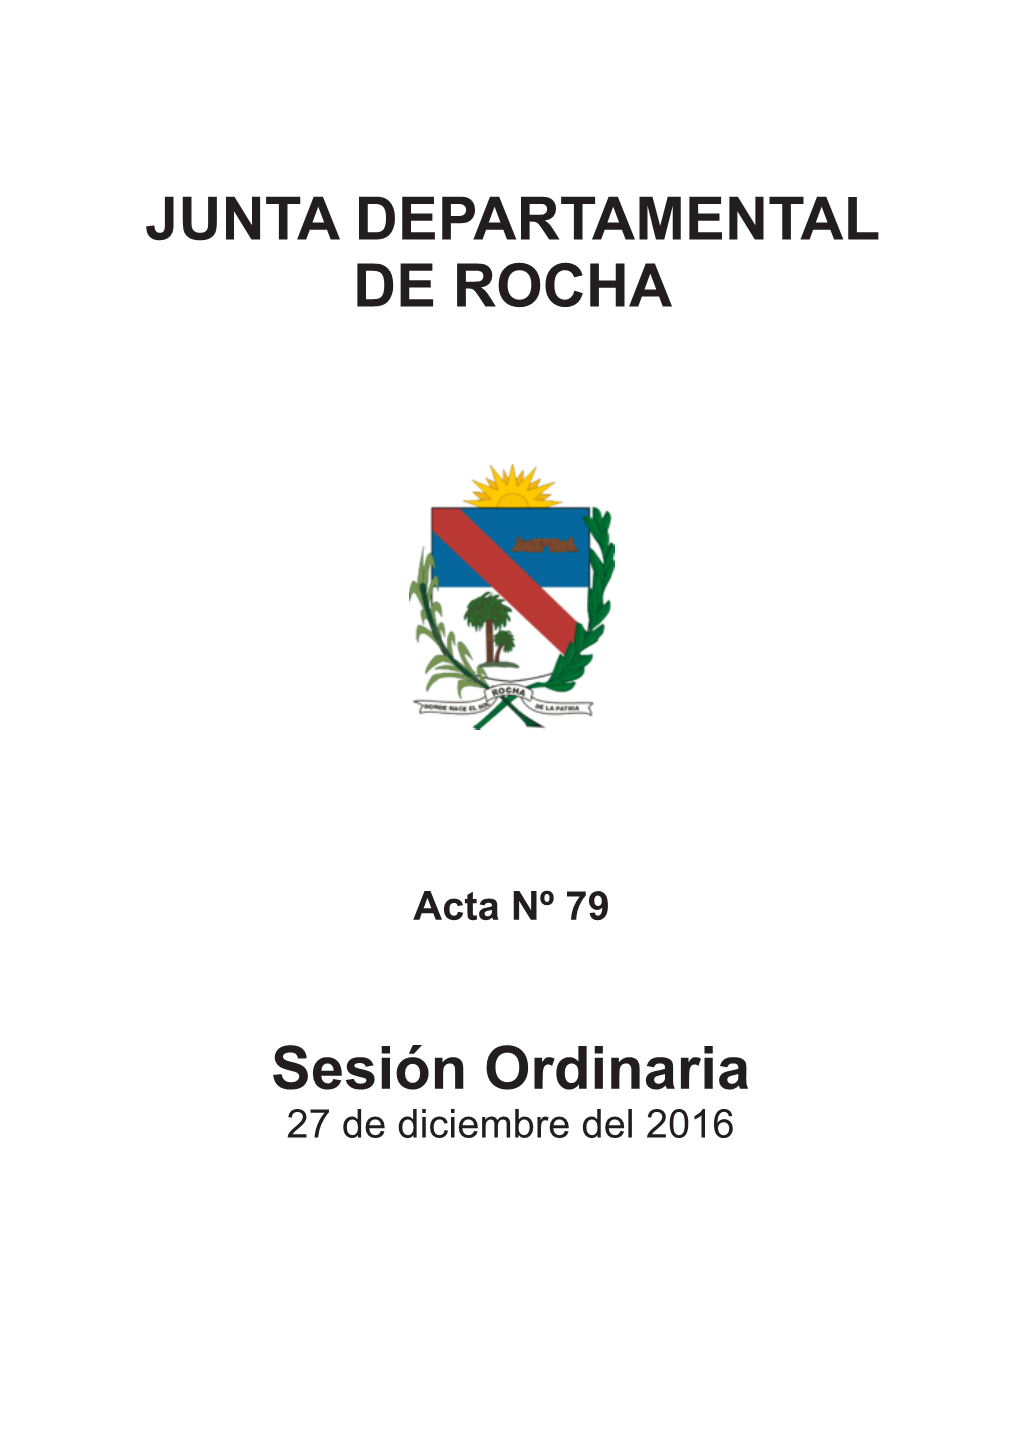 JUNTA DEPARTAMENTAL DE ROCHA Sesión Ordinaria